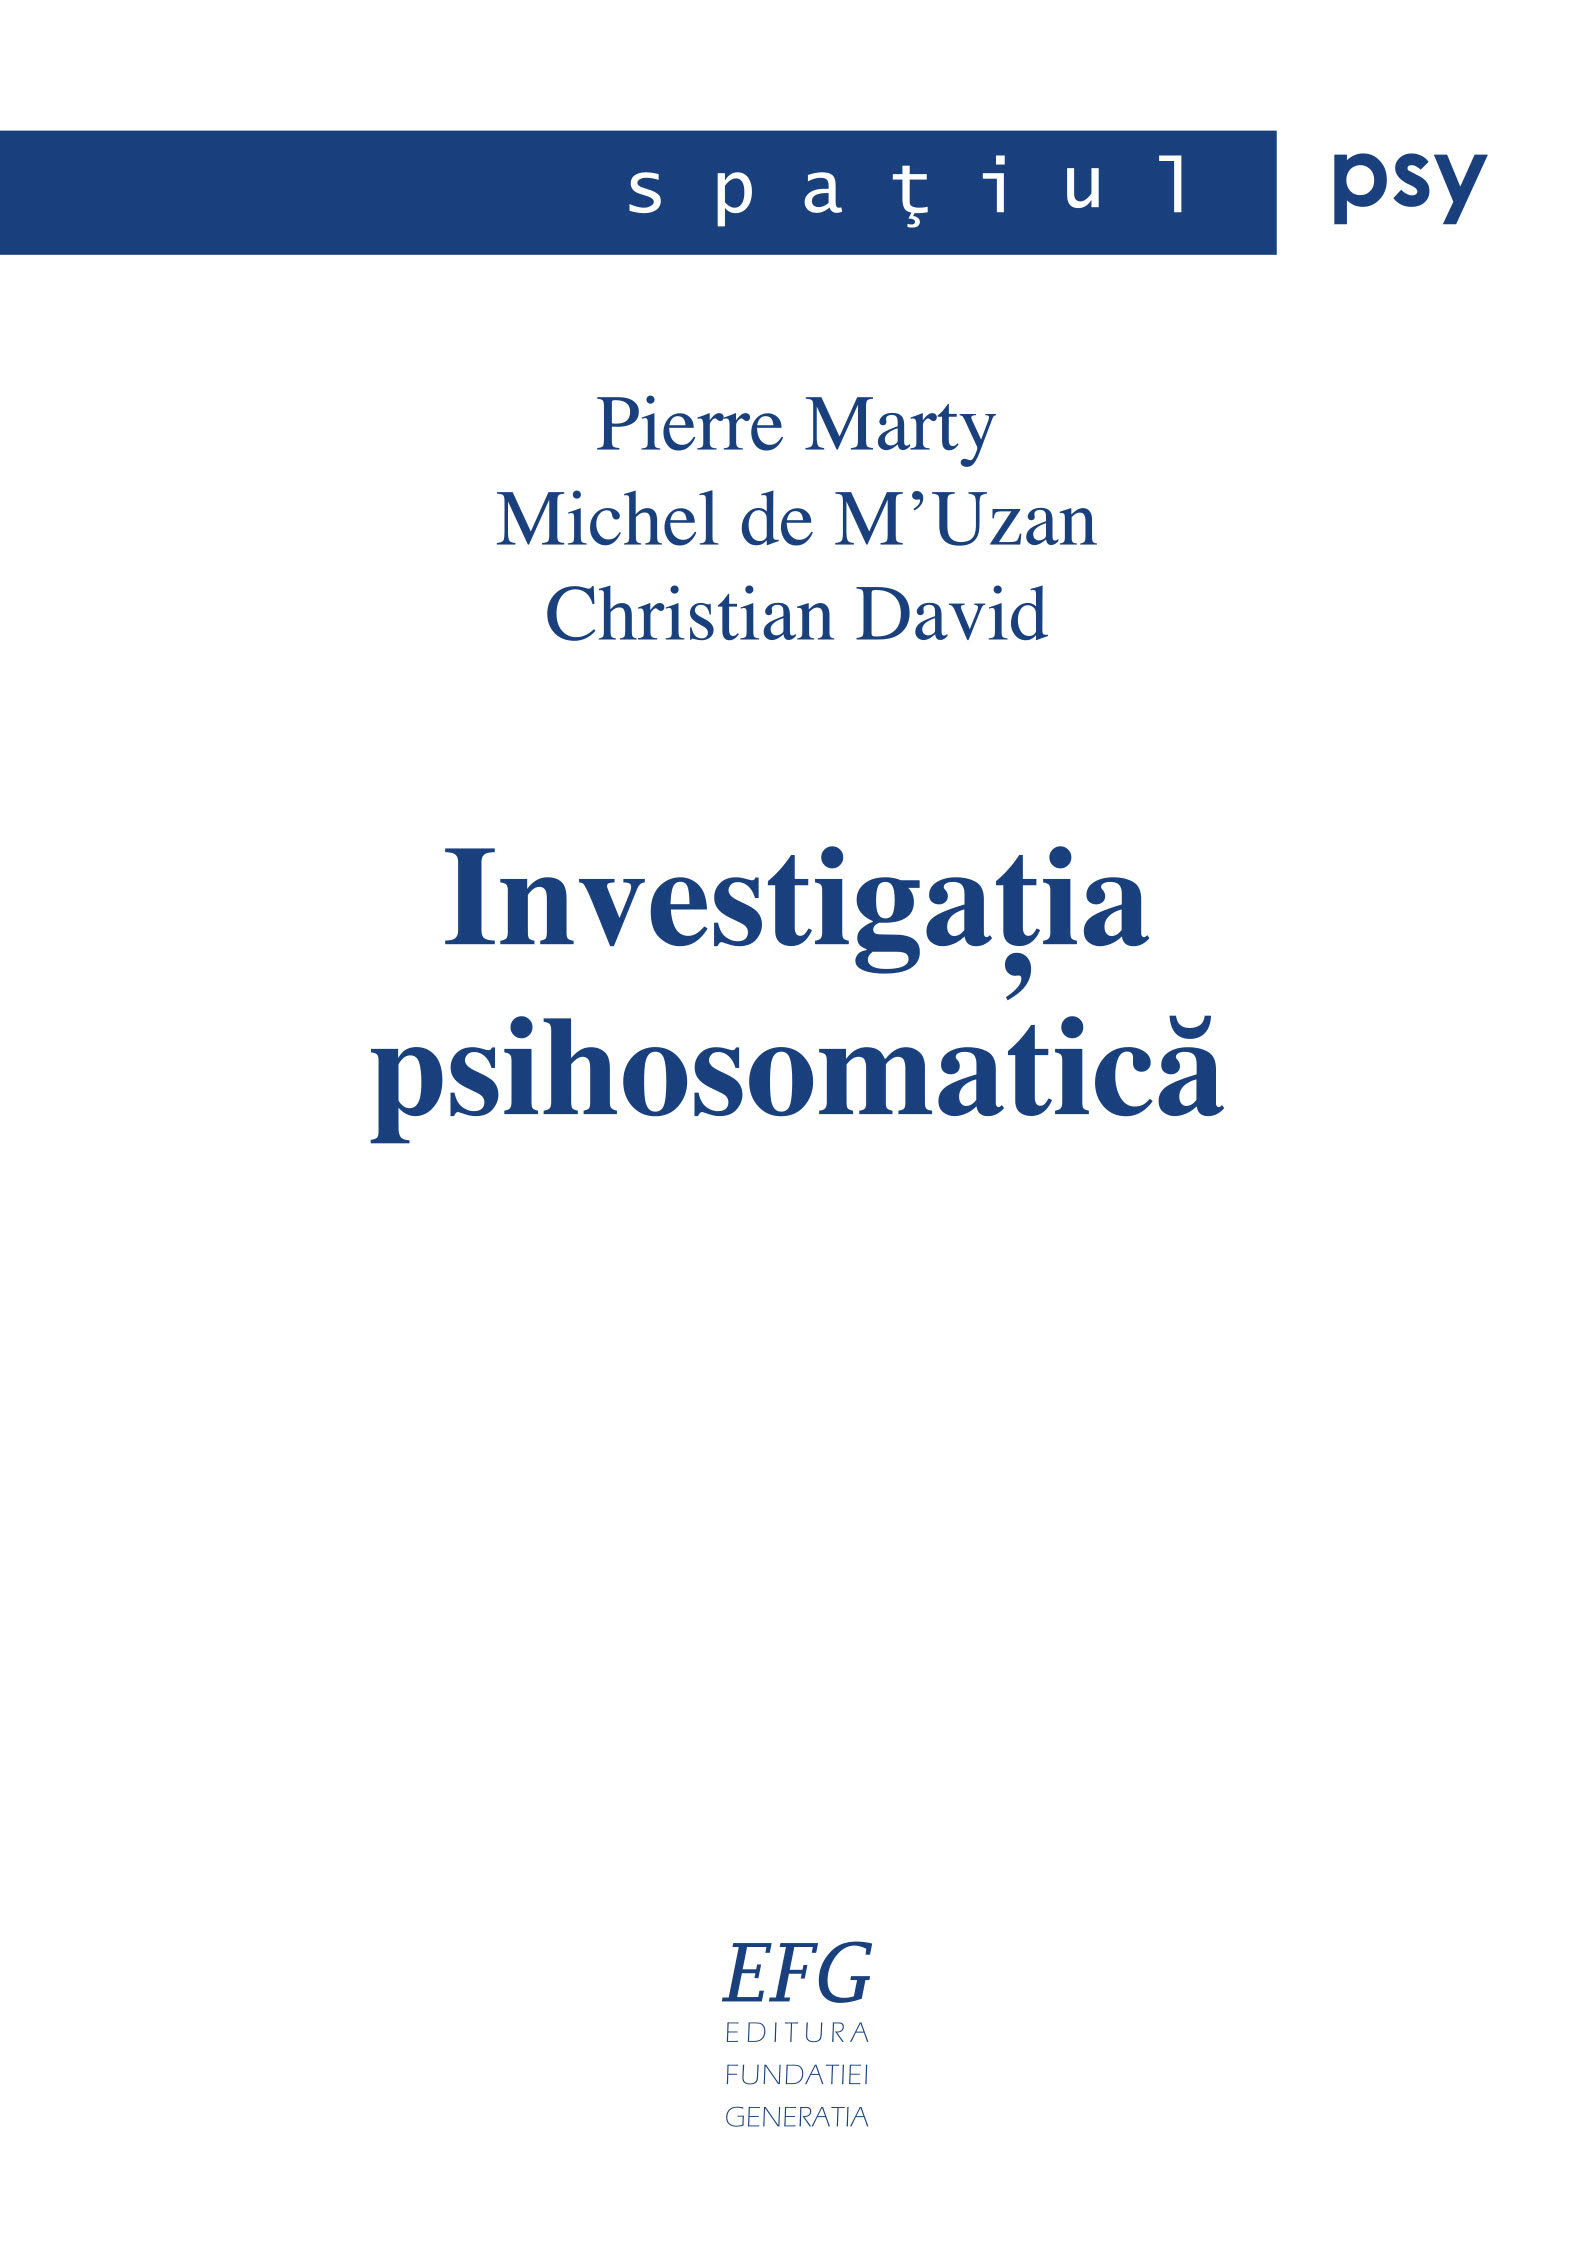 Pierre Marty, Michel de M'Uzan, Christian David – Investigația psihosomatică: Șapte observații clinice